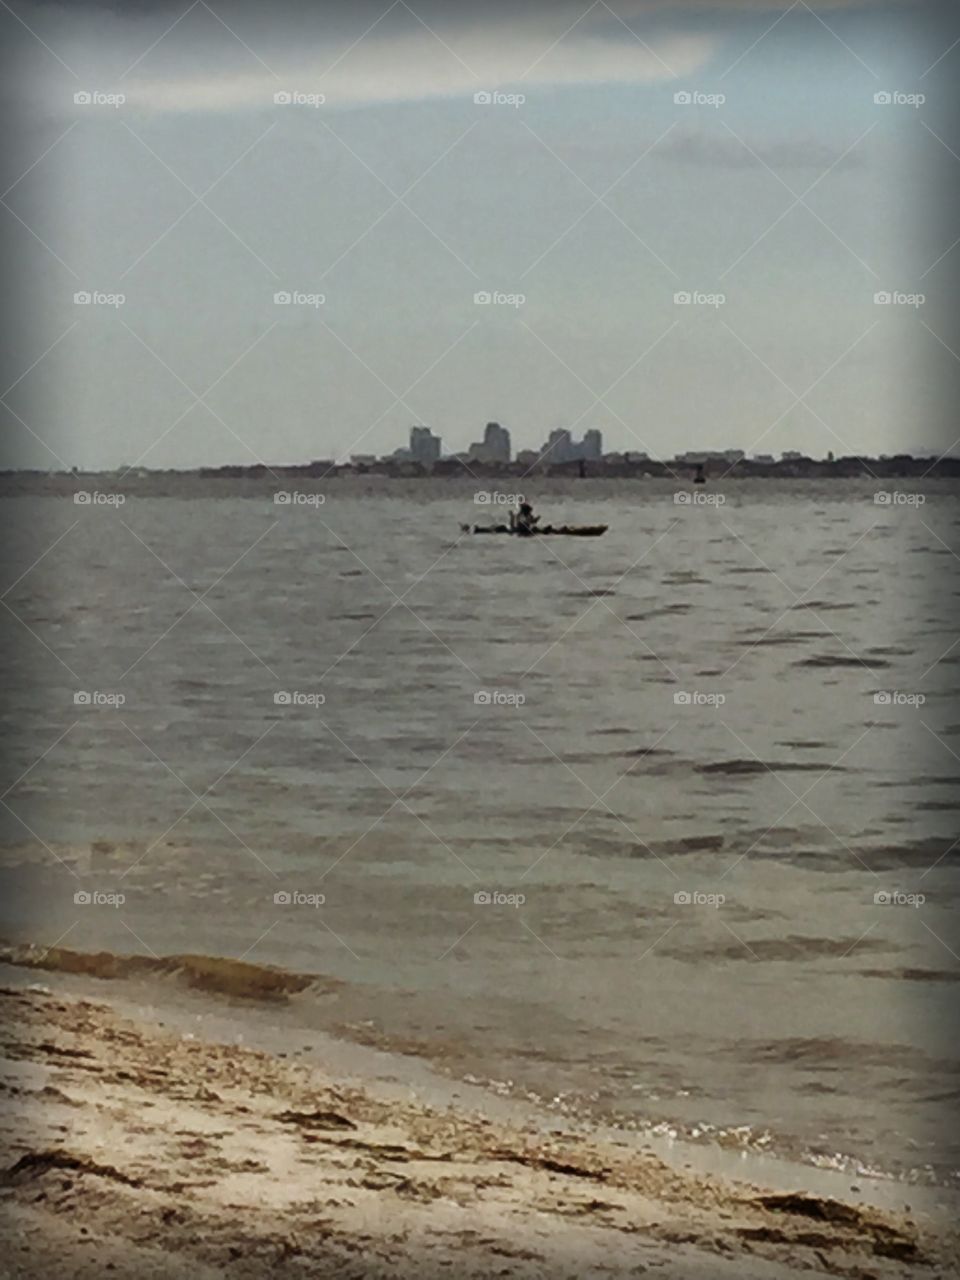 Kayak on the bay